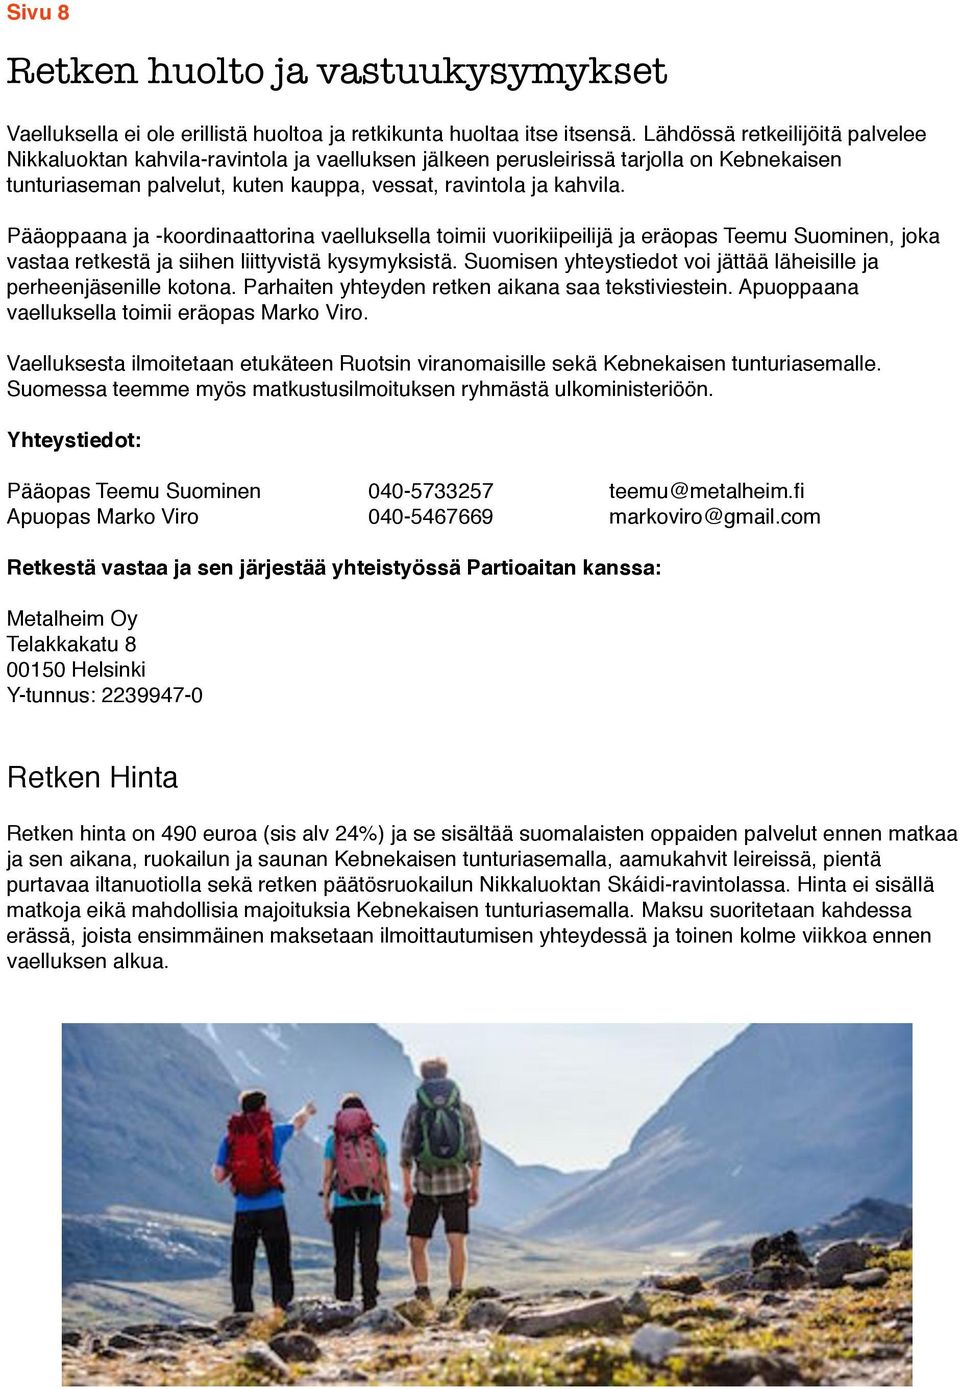 Pääoppaana ja -koordinaattorina vaelluksella toimii vuorikiipeilijä ja eräopas Teemu Suominen, joka vastaa retkestä ja siihen liittyvistä kysymyksistä.